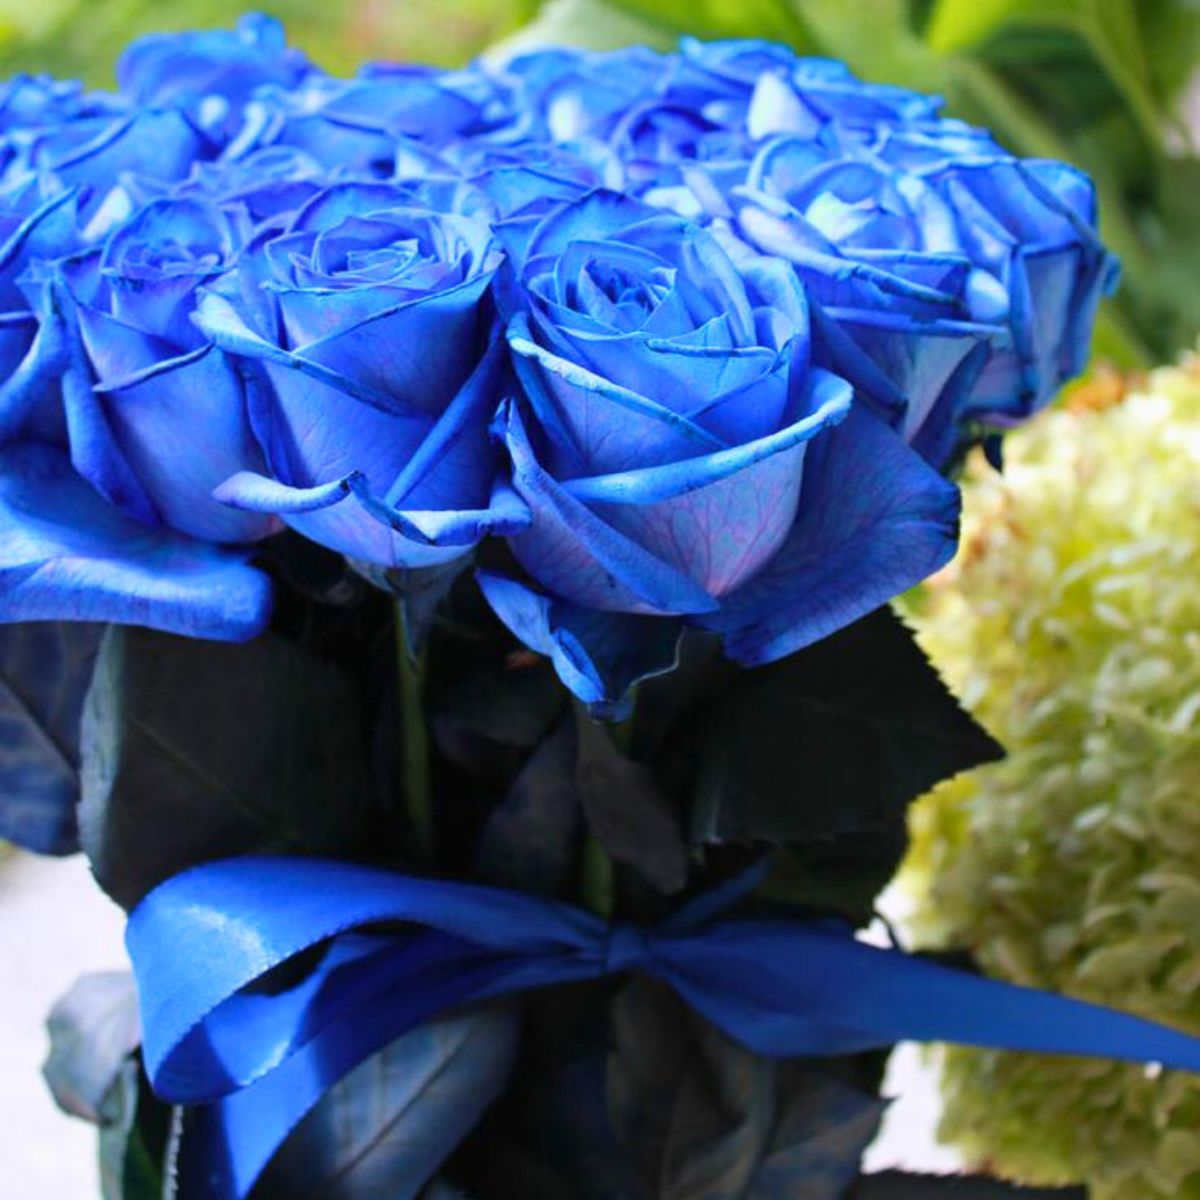 Do Blue Roses Exist?